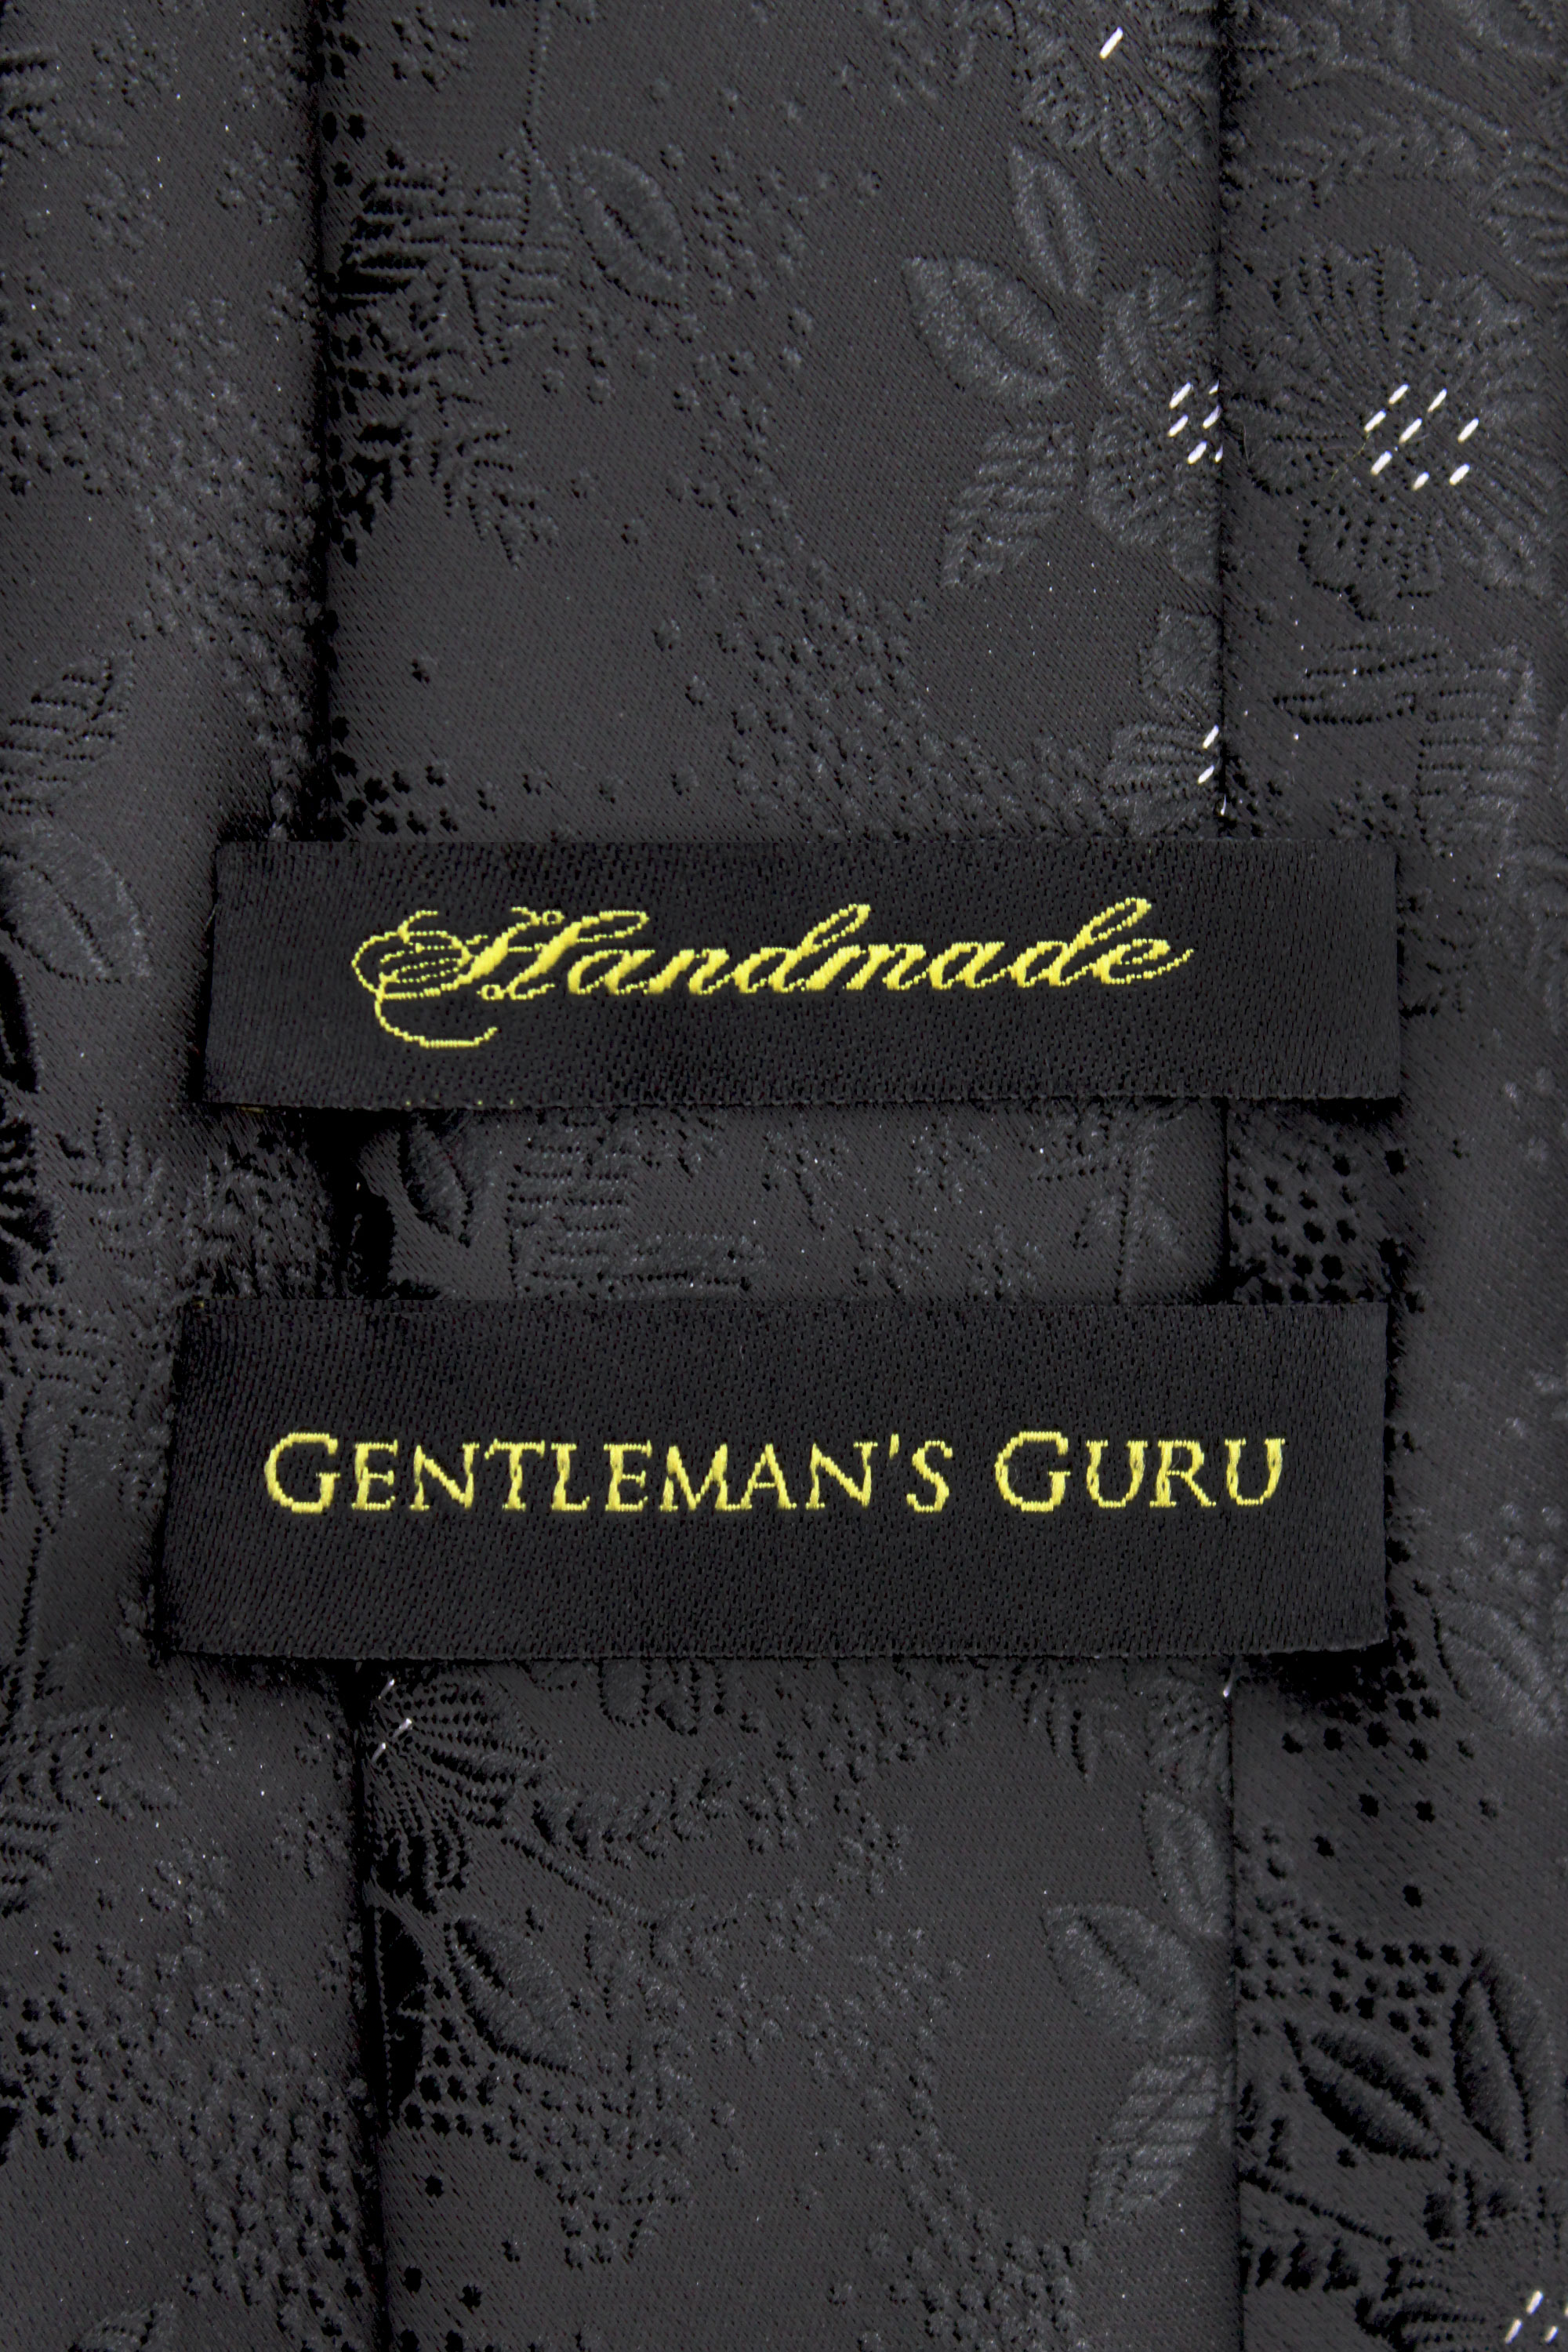 Black-Floral-Branded-Tie-Handmade-from-Gentlemansguru.com